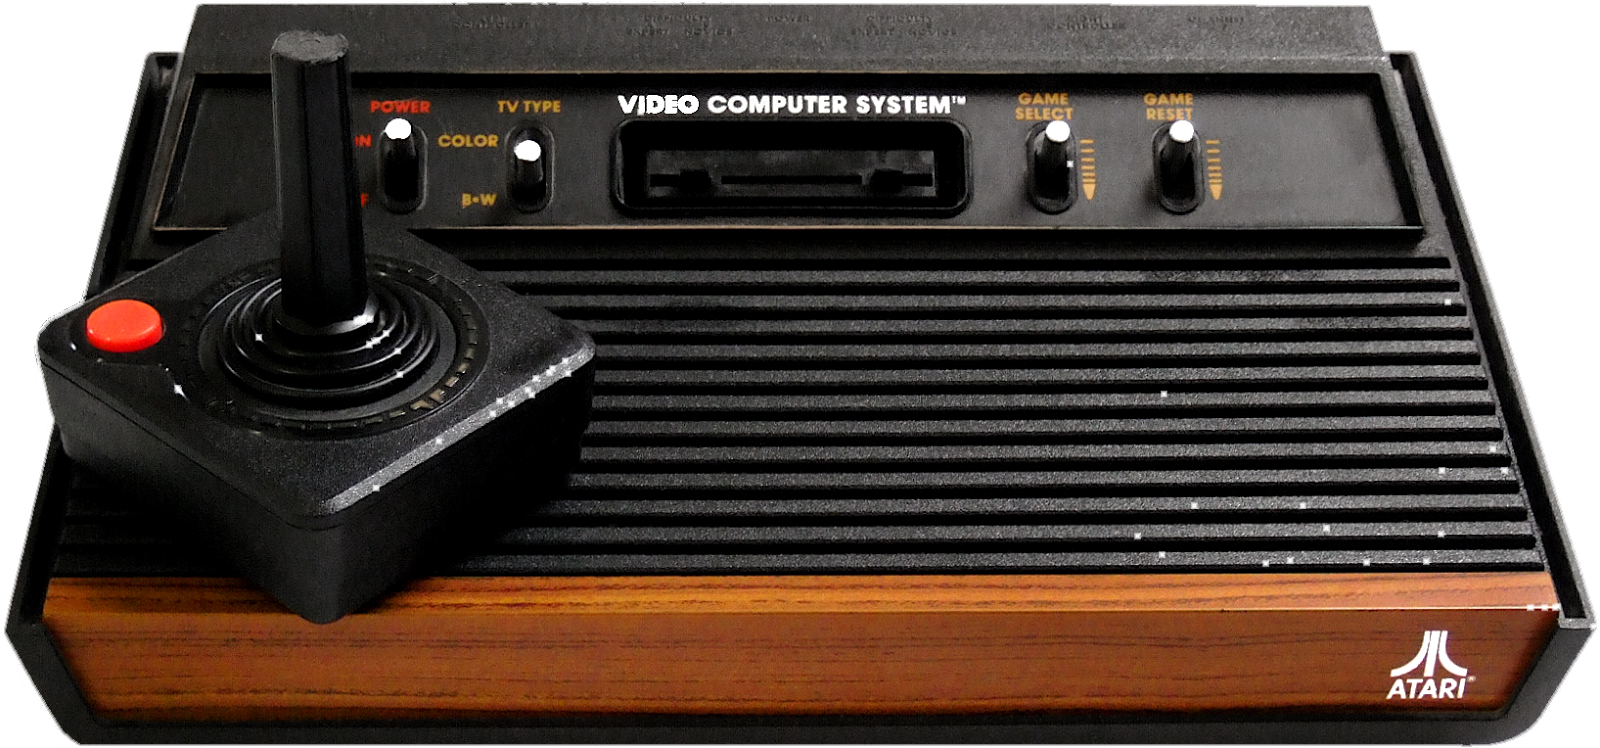 Atari #1